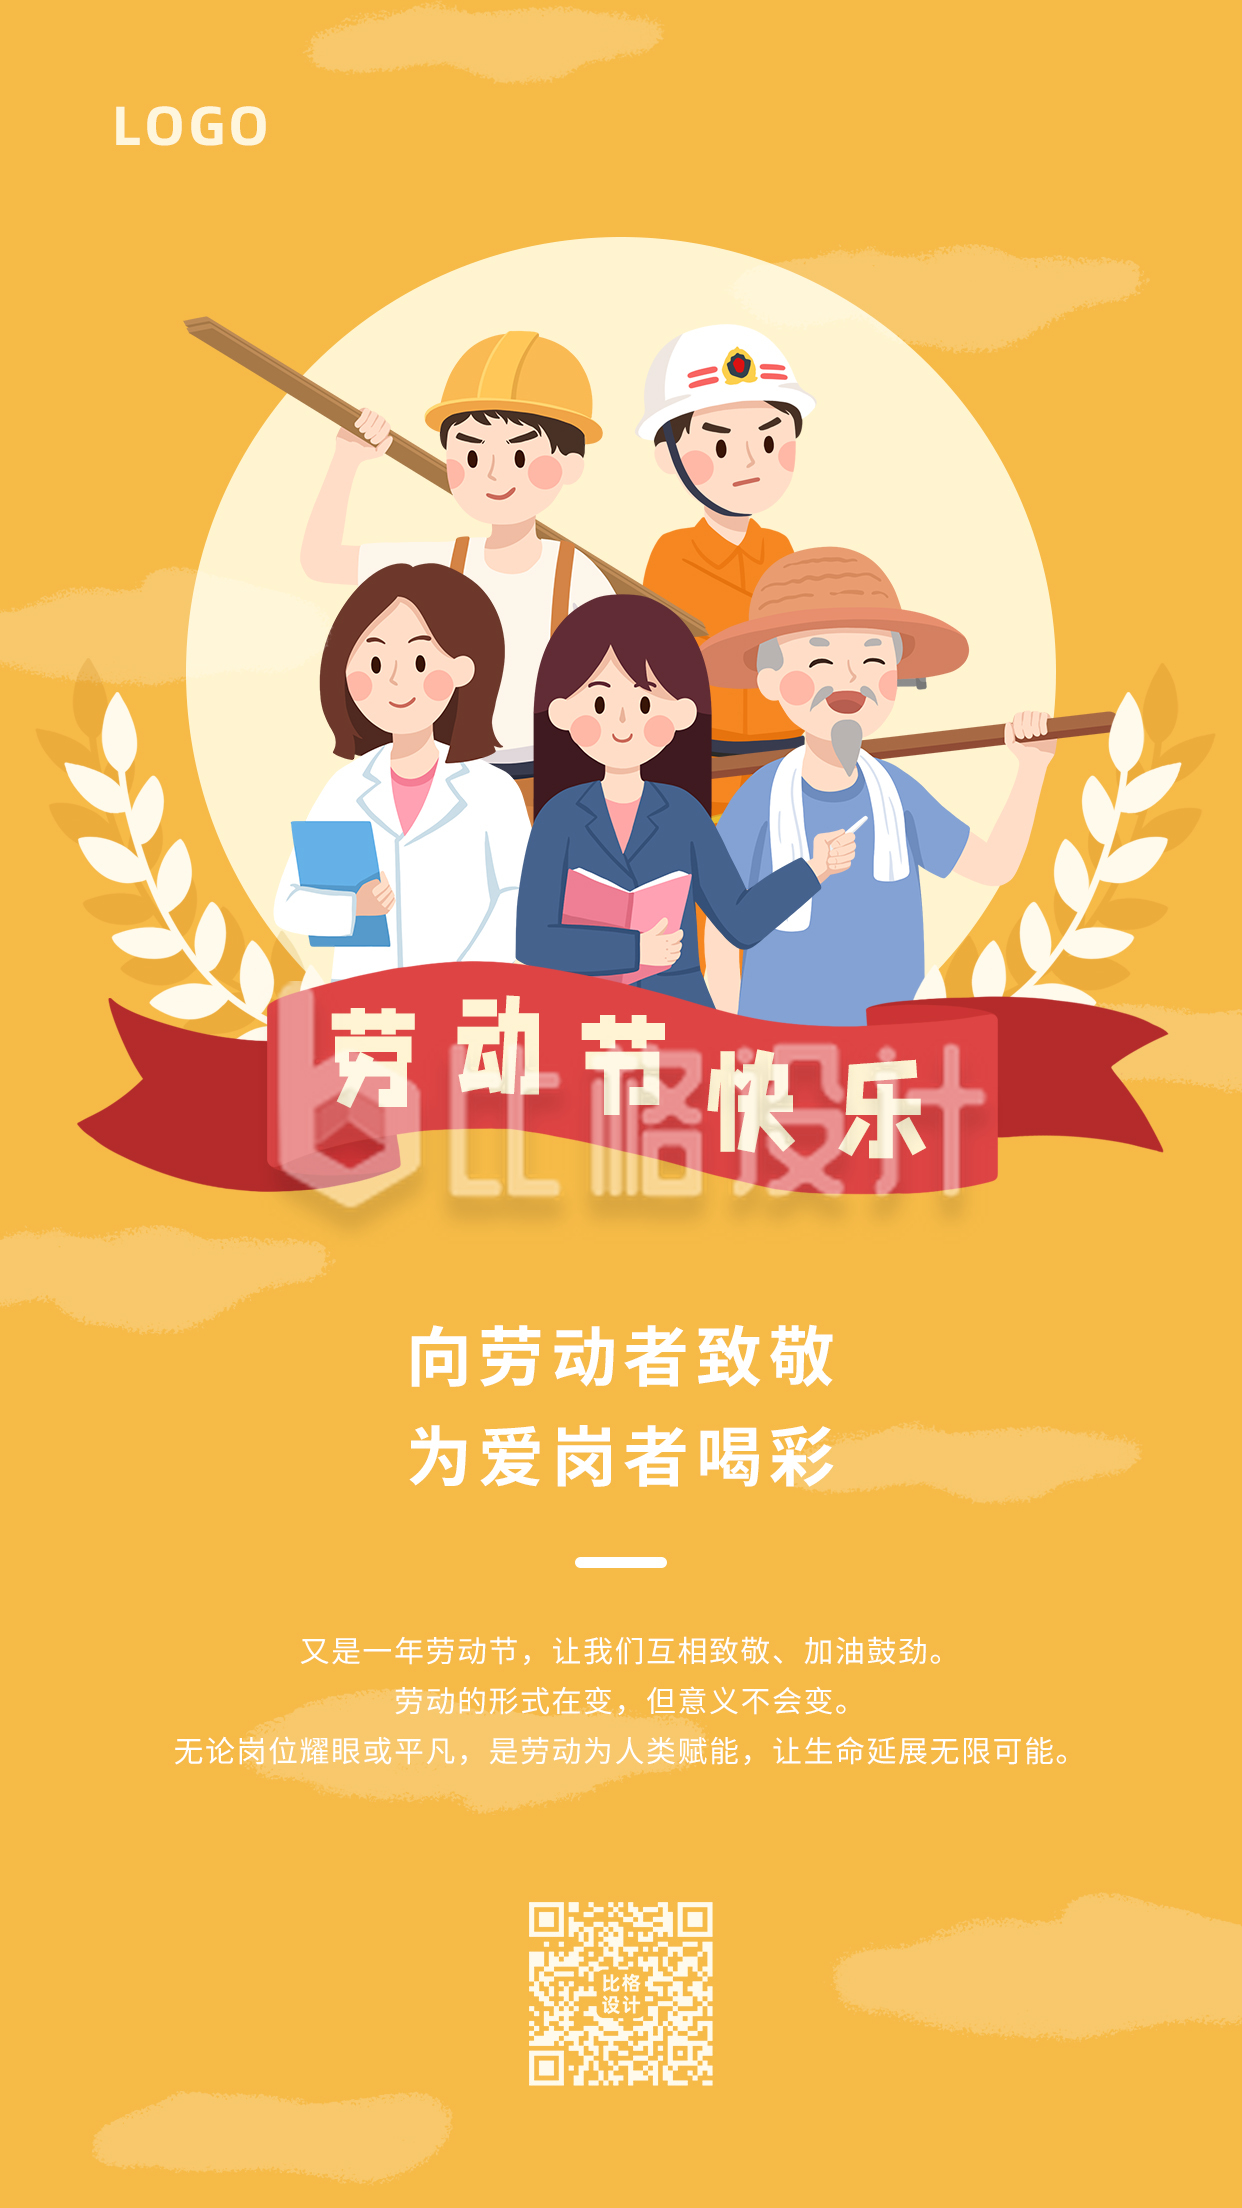 劳动节快乐致敬劳动者卡通简约手机海报